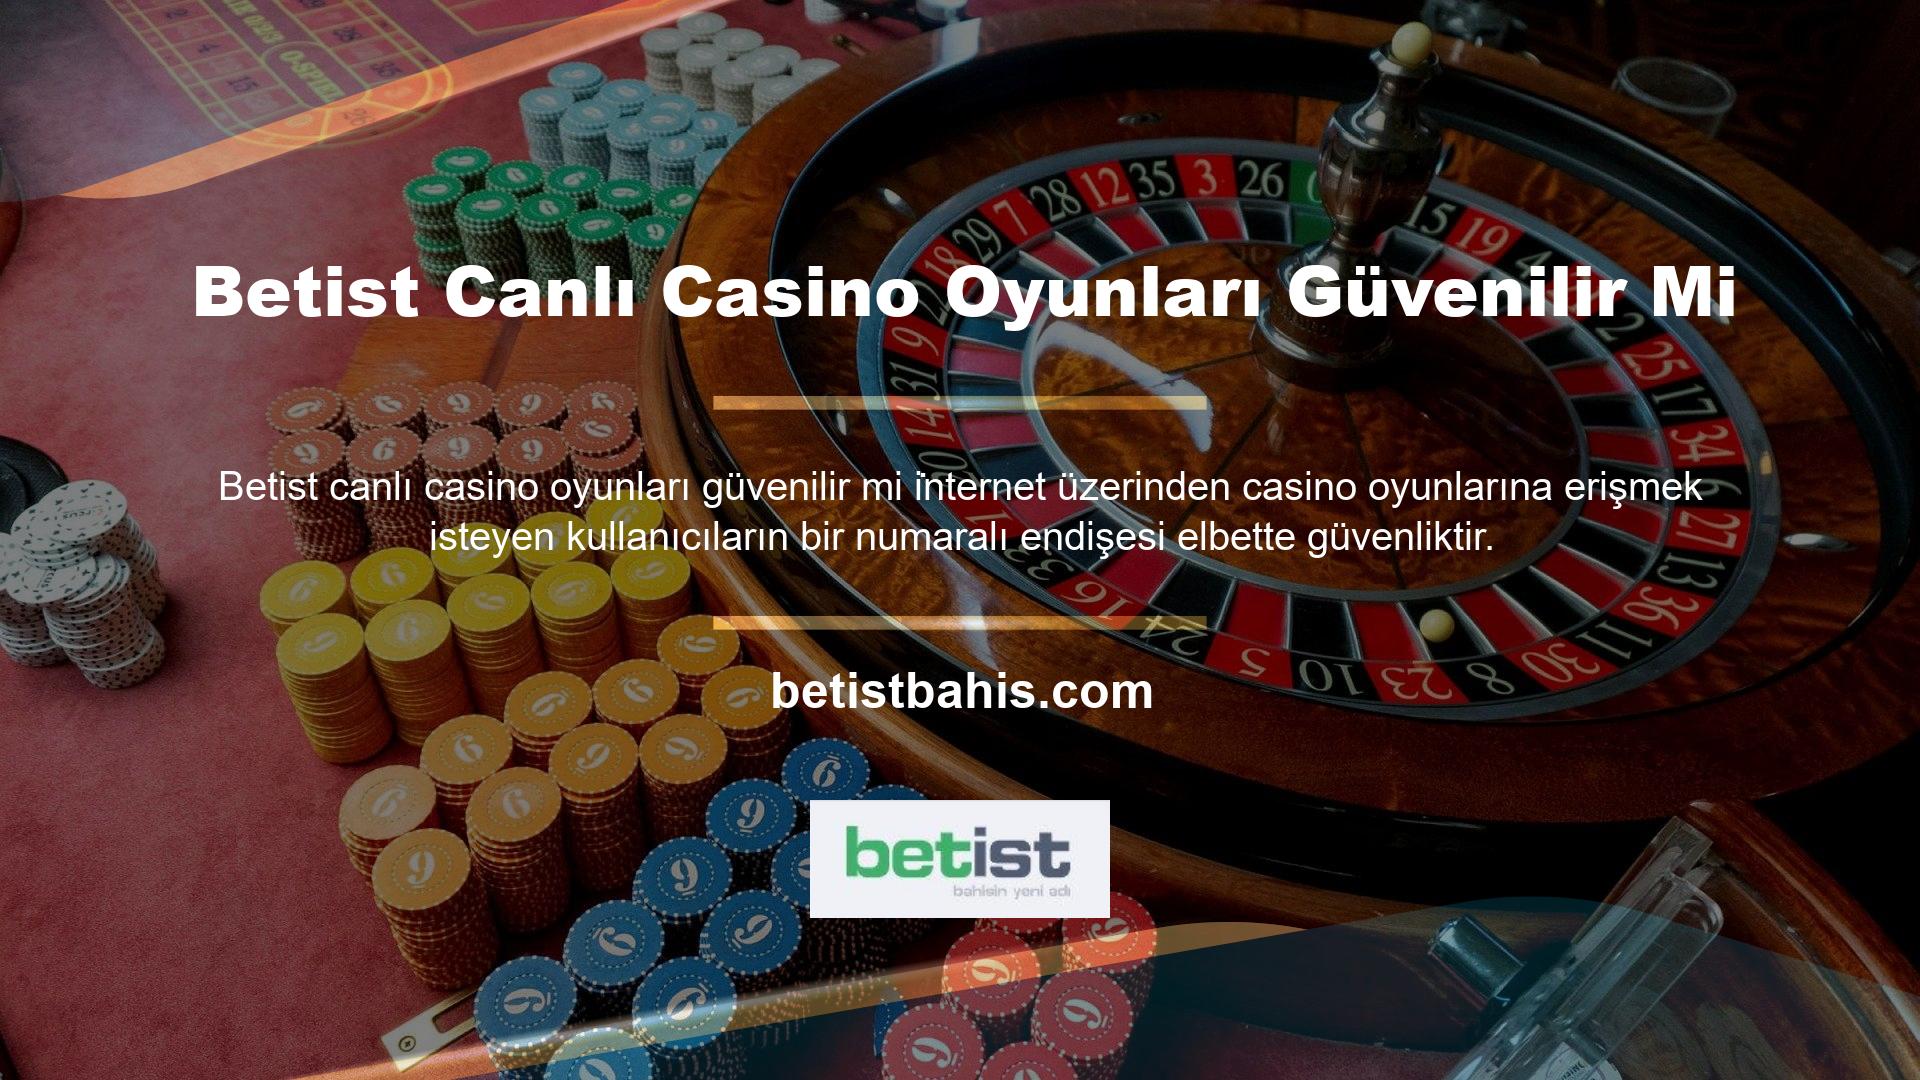 Betist Canlı Casino oynarken görüntü donması gibi şikayetleri olmayan casino tutkunları bile Betist Canlı Casino oyunlarına güvenilir mi sorusunun cevabını merak etmektedir